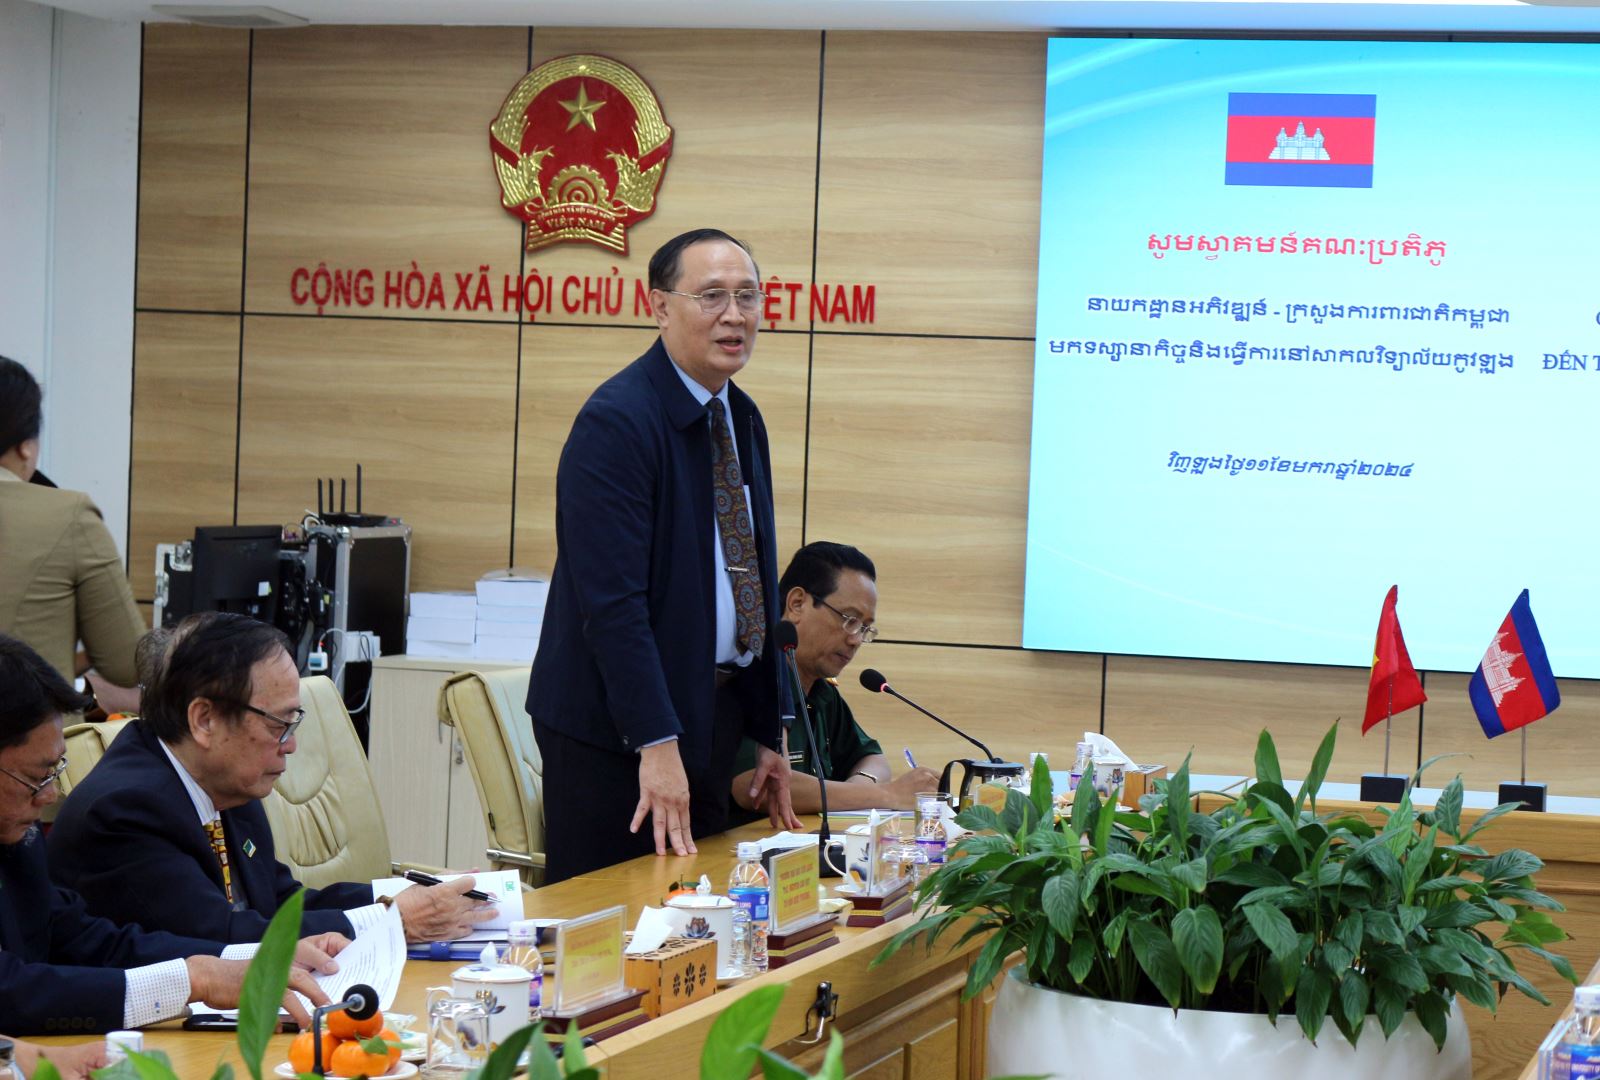 Tiến sĩ Nguyễn Thanh Dũng - Phó Hiệu trưởng Trường Đại học Cửu Long phát biểu tại buổi làm việc.